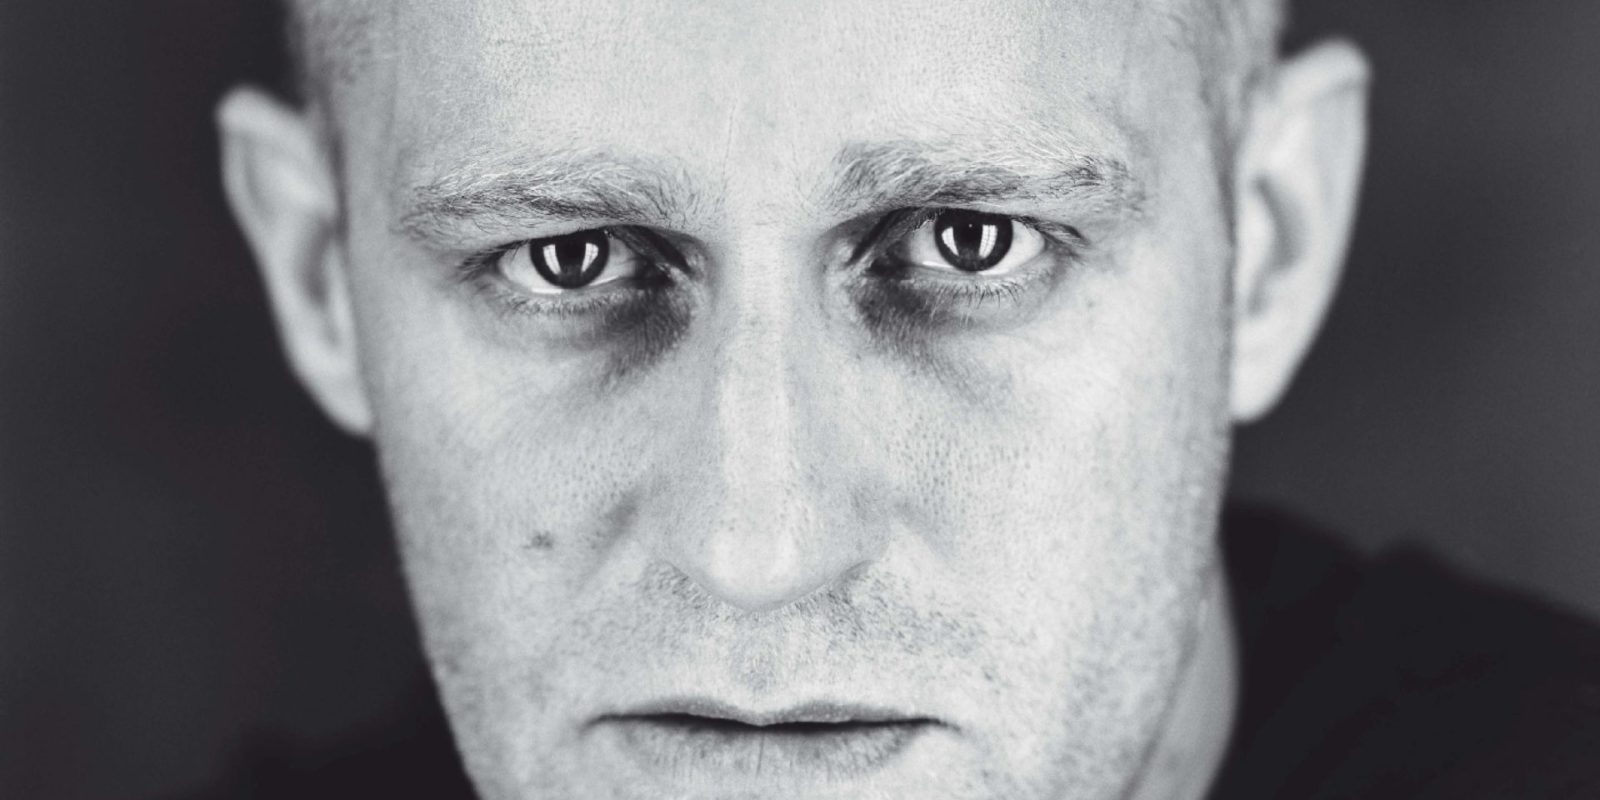 Ausschnitt eines Porträtfotos von Jürgen Vogel, fotografiert von Jim Rakete